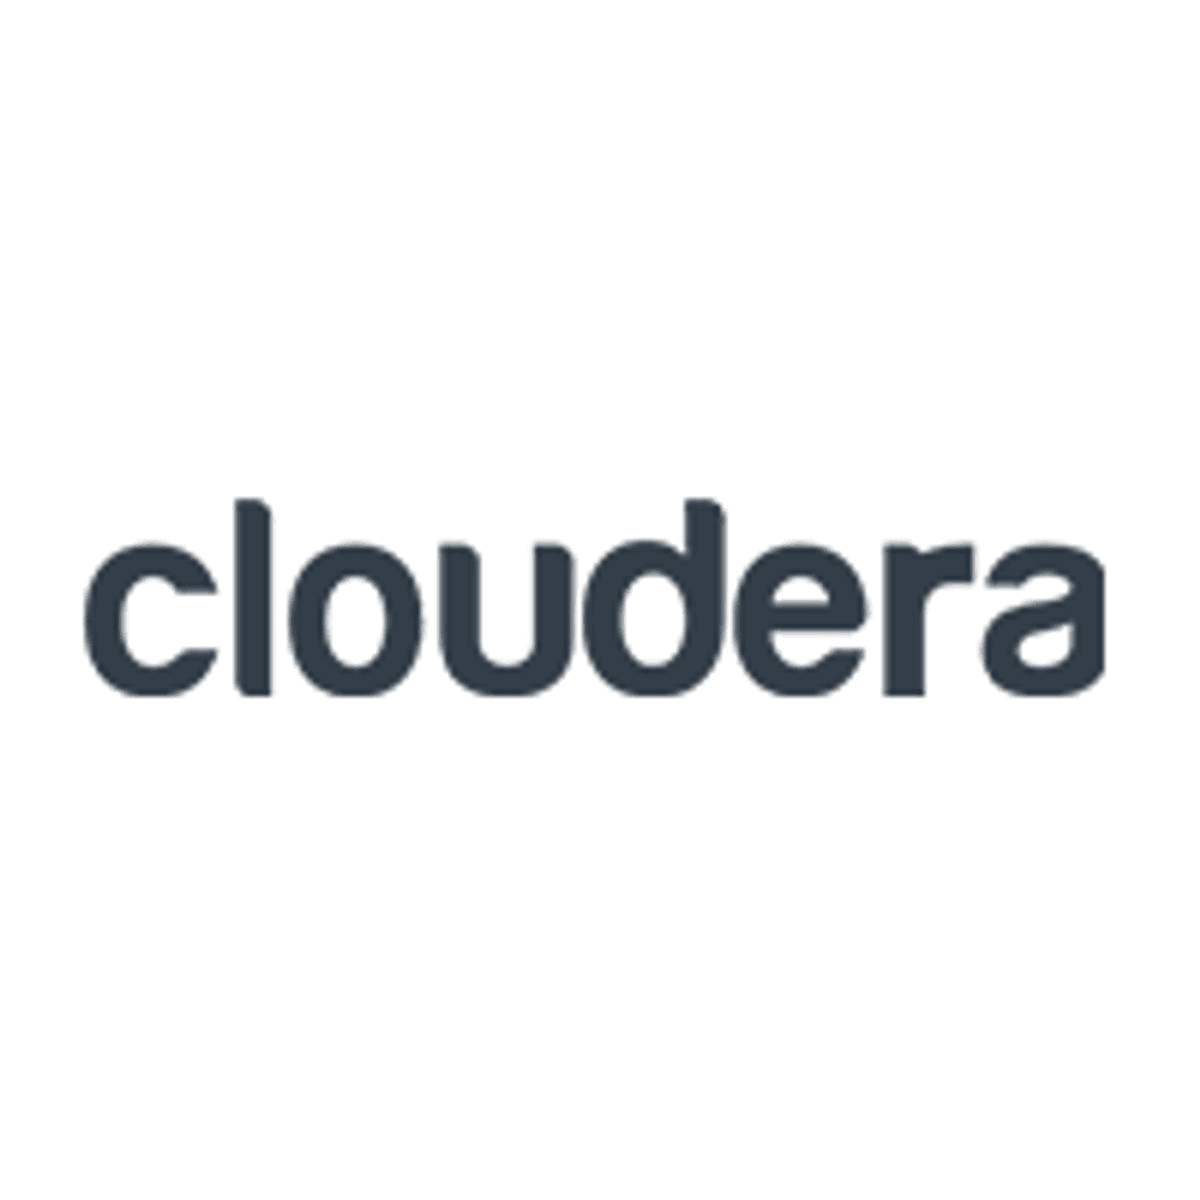 Cloudera Partner Network is nu actief image